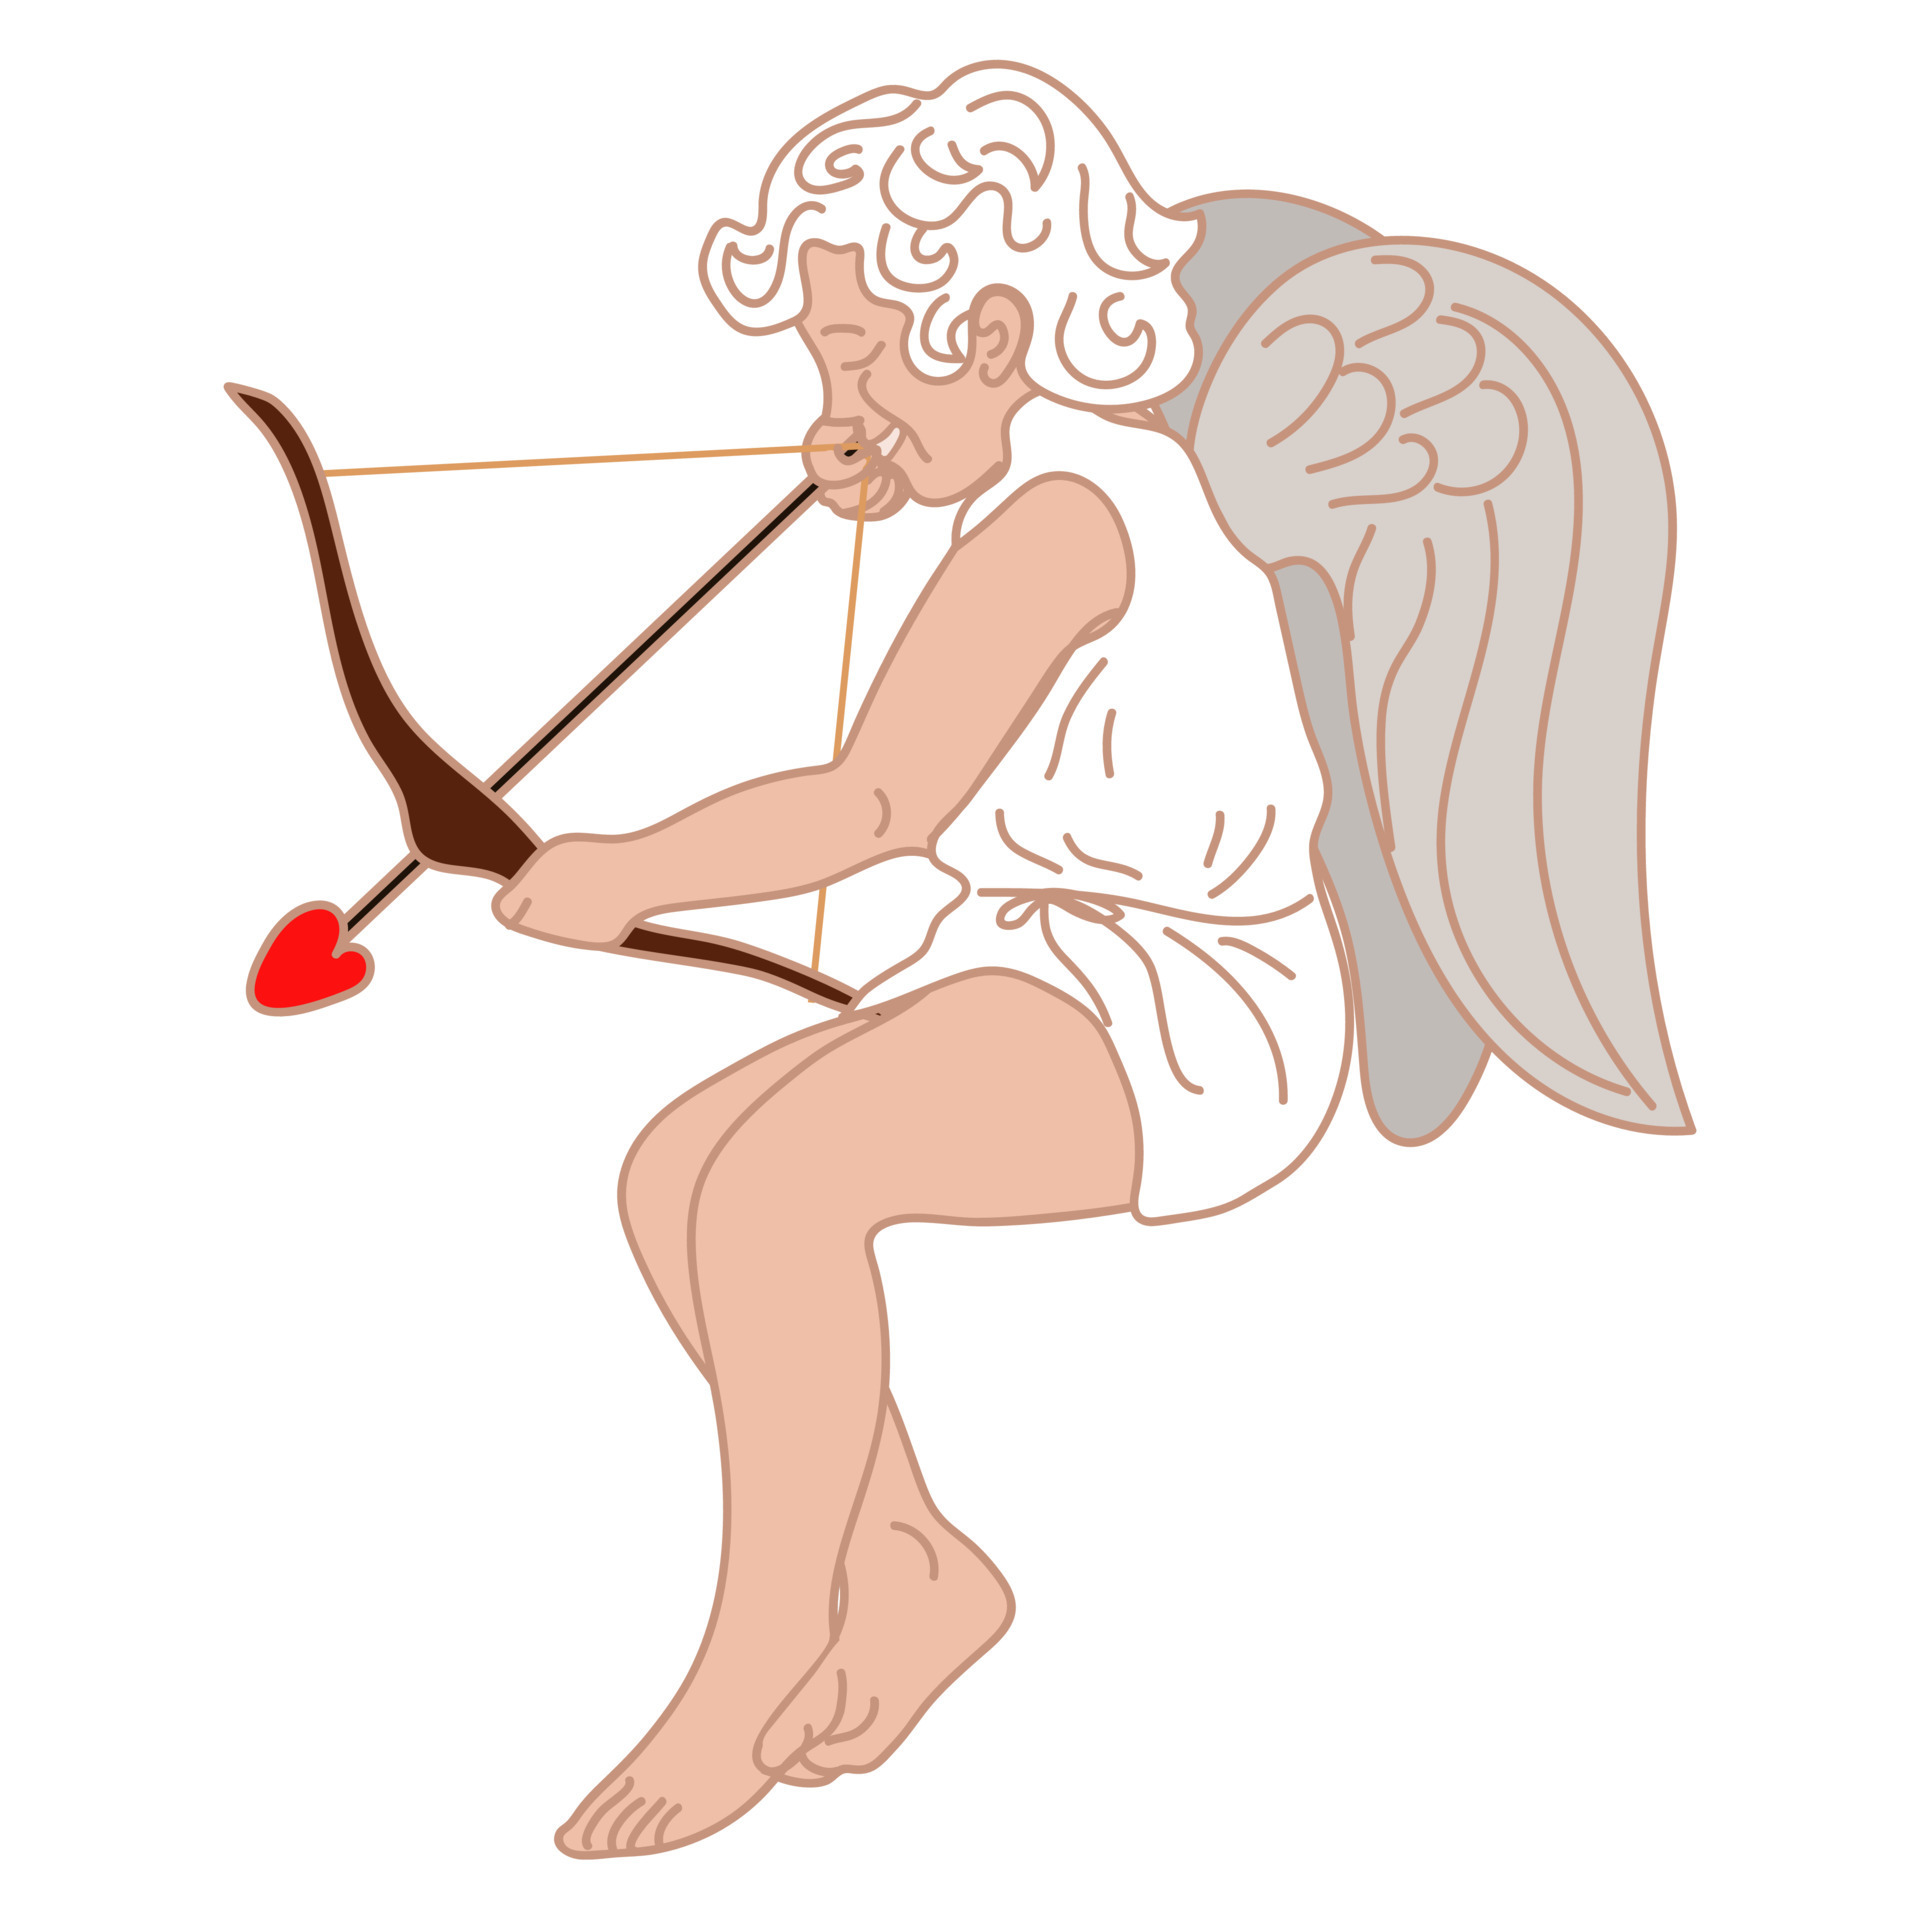 une illustration d'un petit cupidon avec un arc et une flèche, qui